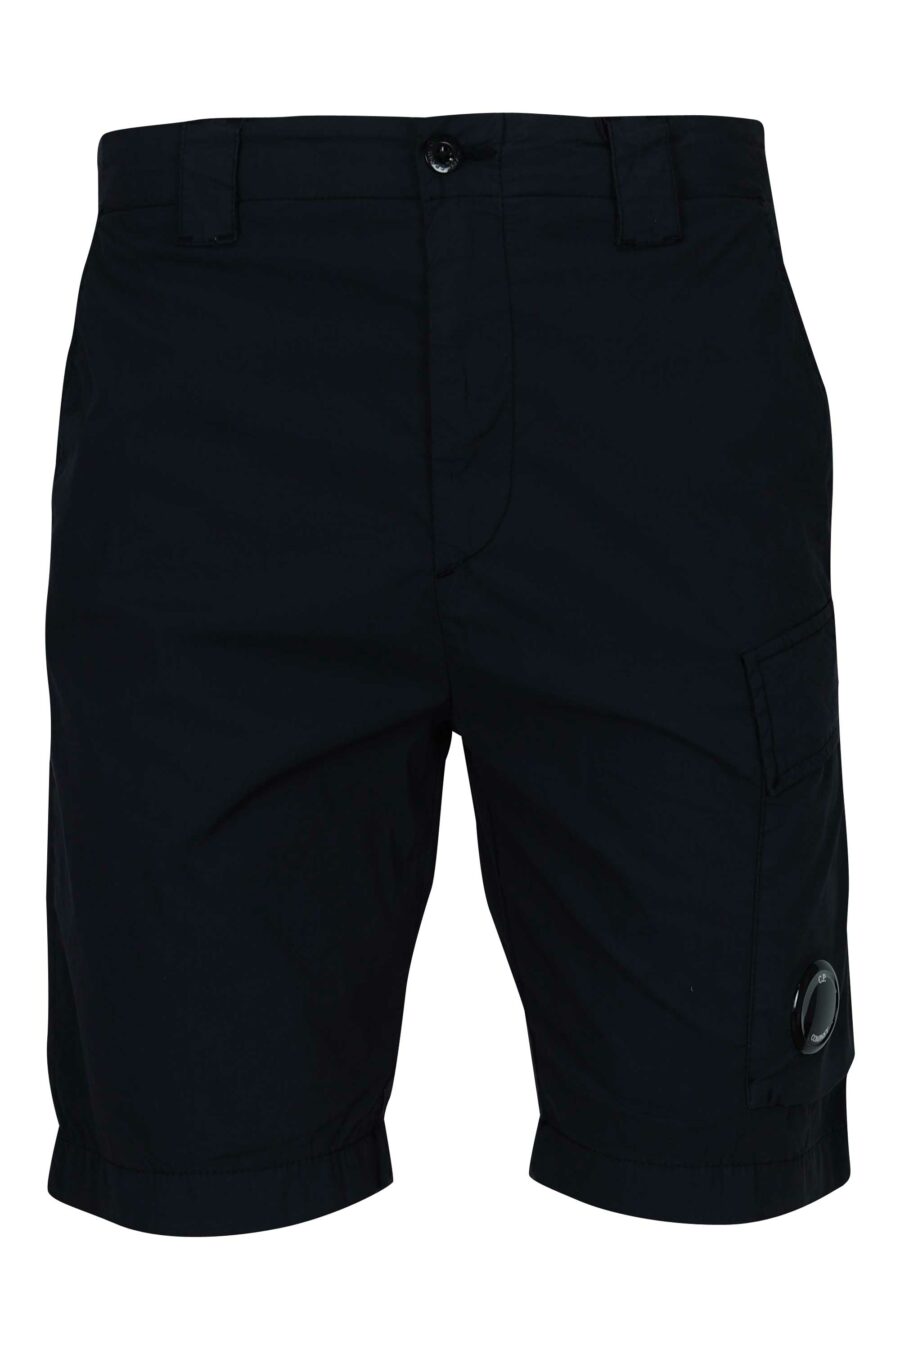 Pantalón corto midi azul oscuro con minilogo lente - 7620943786507